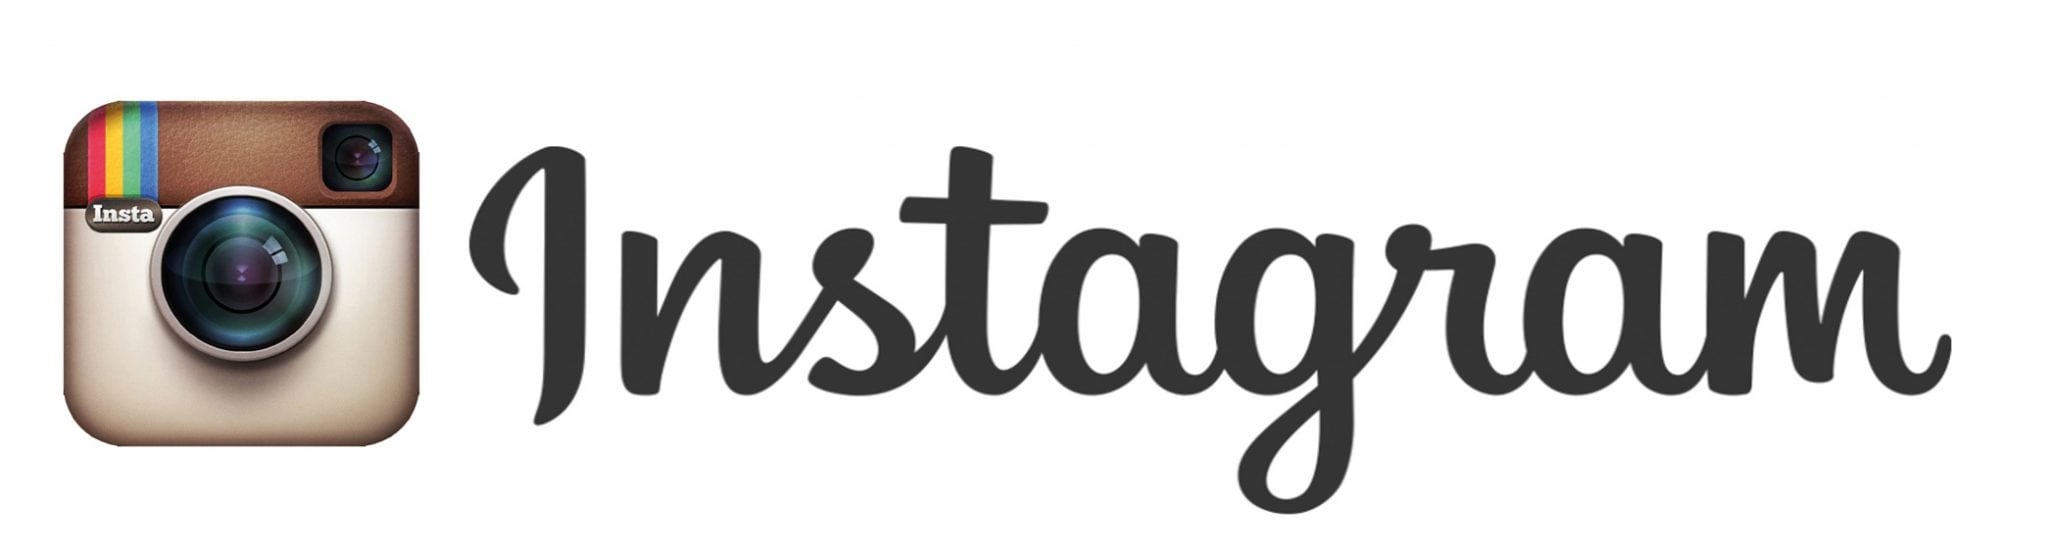 instagram-logo-1024x278